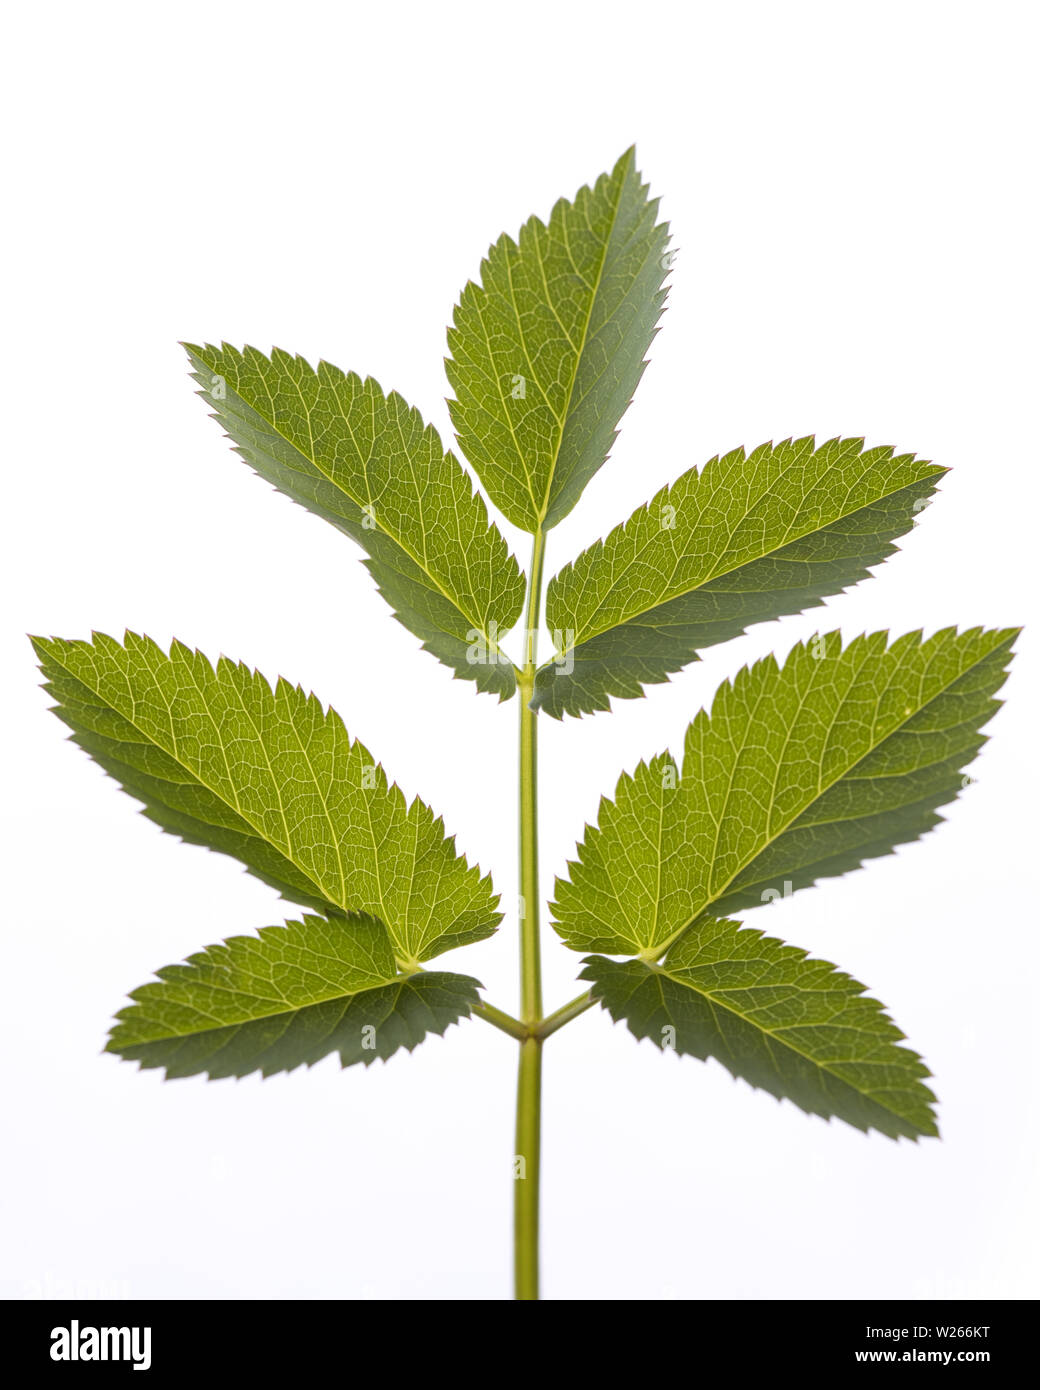 healing / medicinal plants: leaf of Aegopodium podagraria isolated on white background Stock Photo